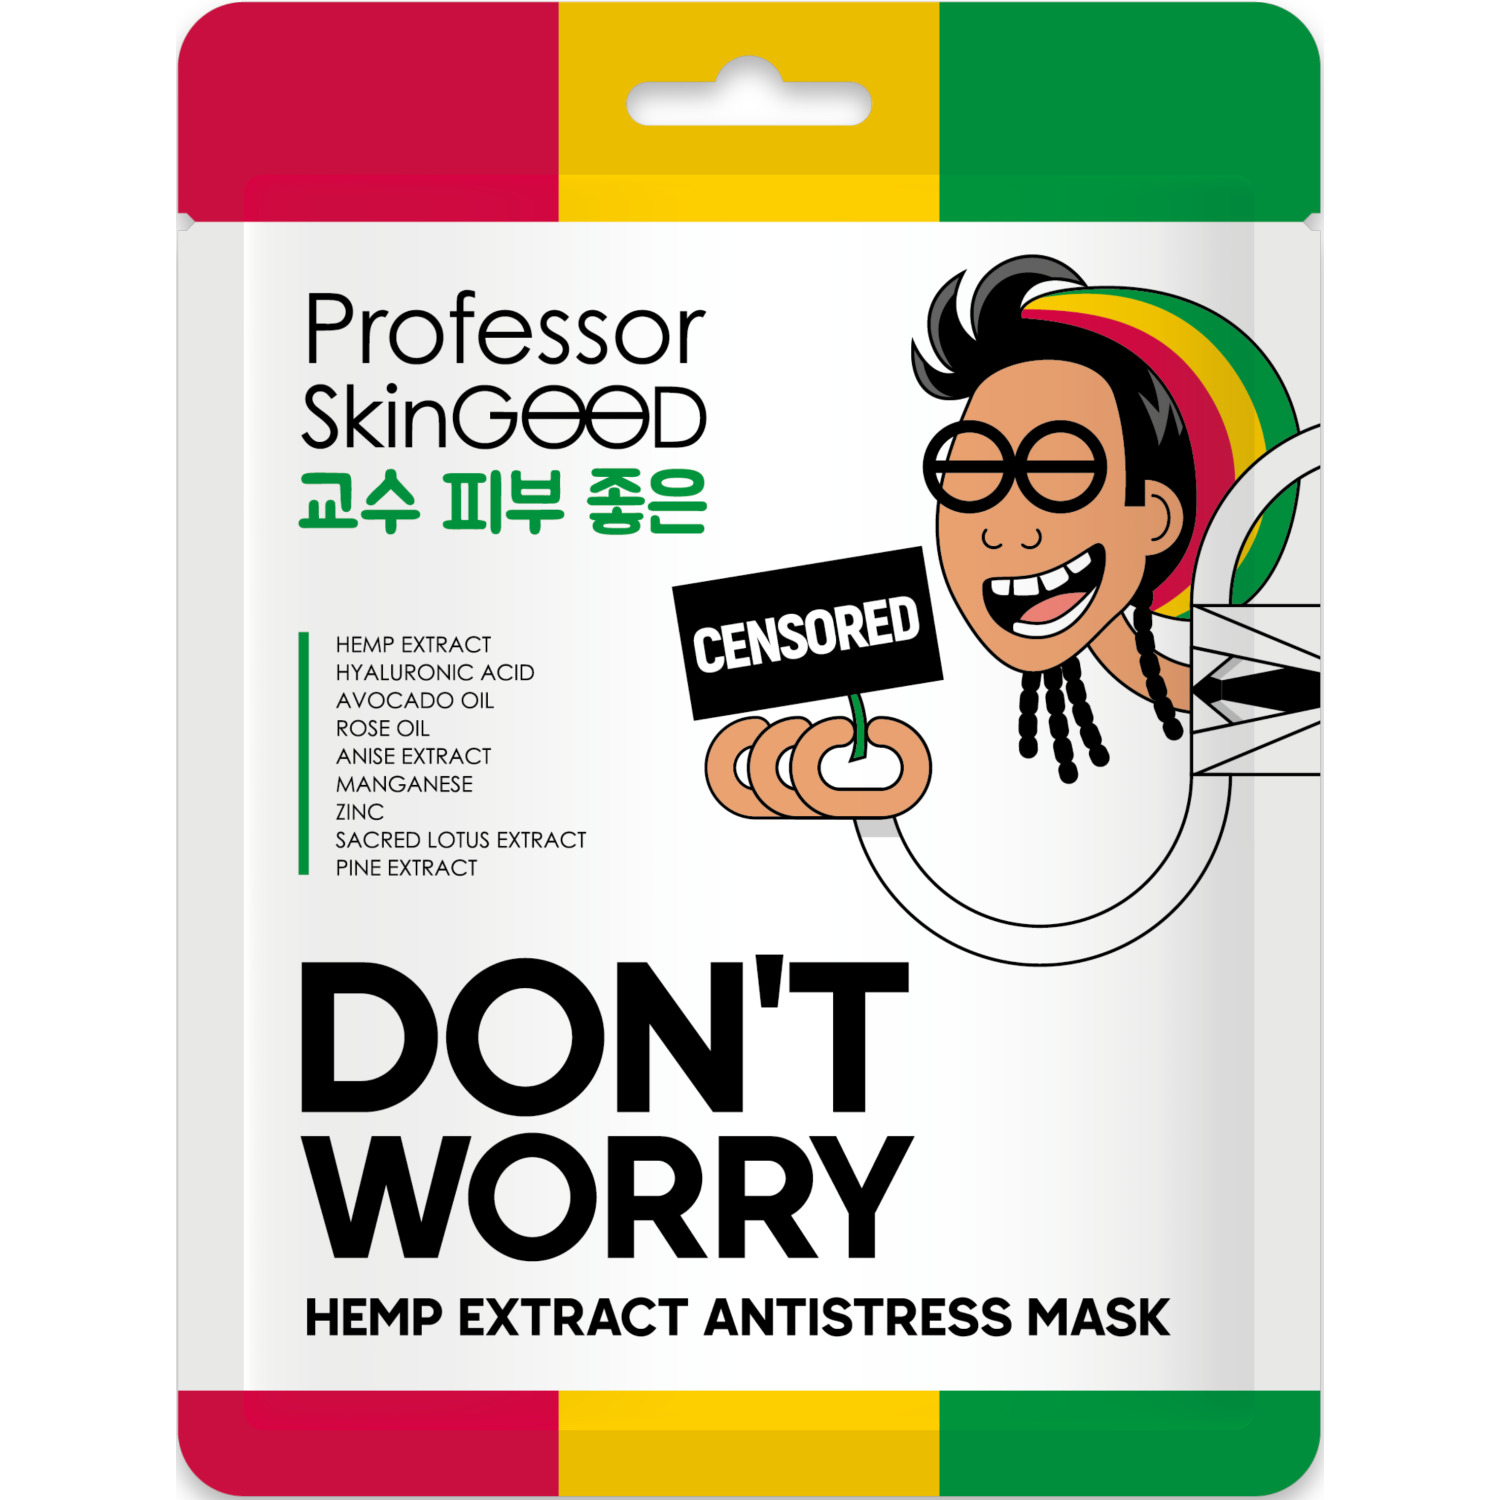 Маска для лица Professor SkinGOOD Hemp Extract Antistress Mask с экстрактом конопли, 25 мл ecosugaring сахарная паста мягкая для ног рук лица полосками 330